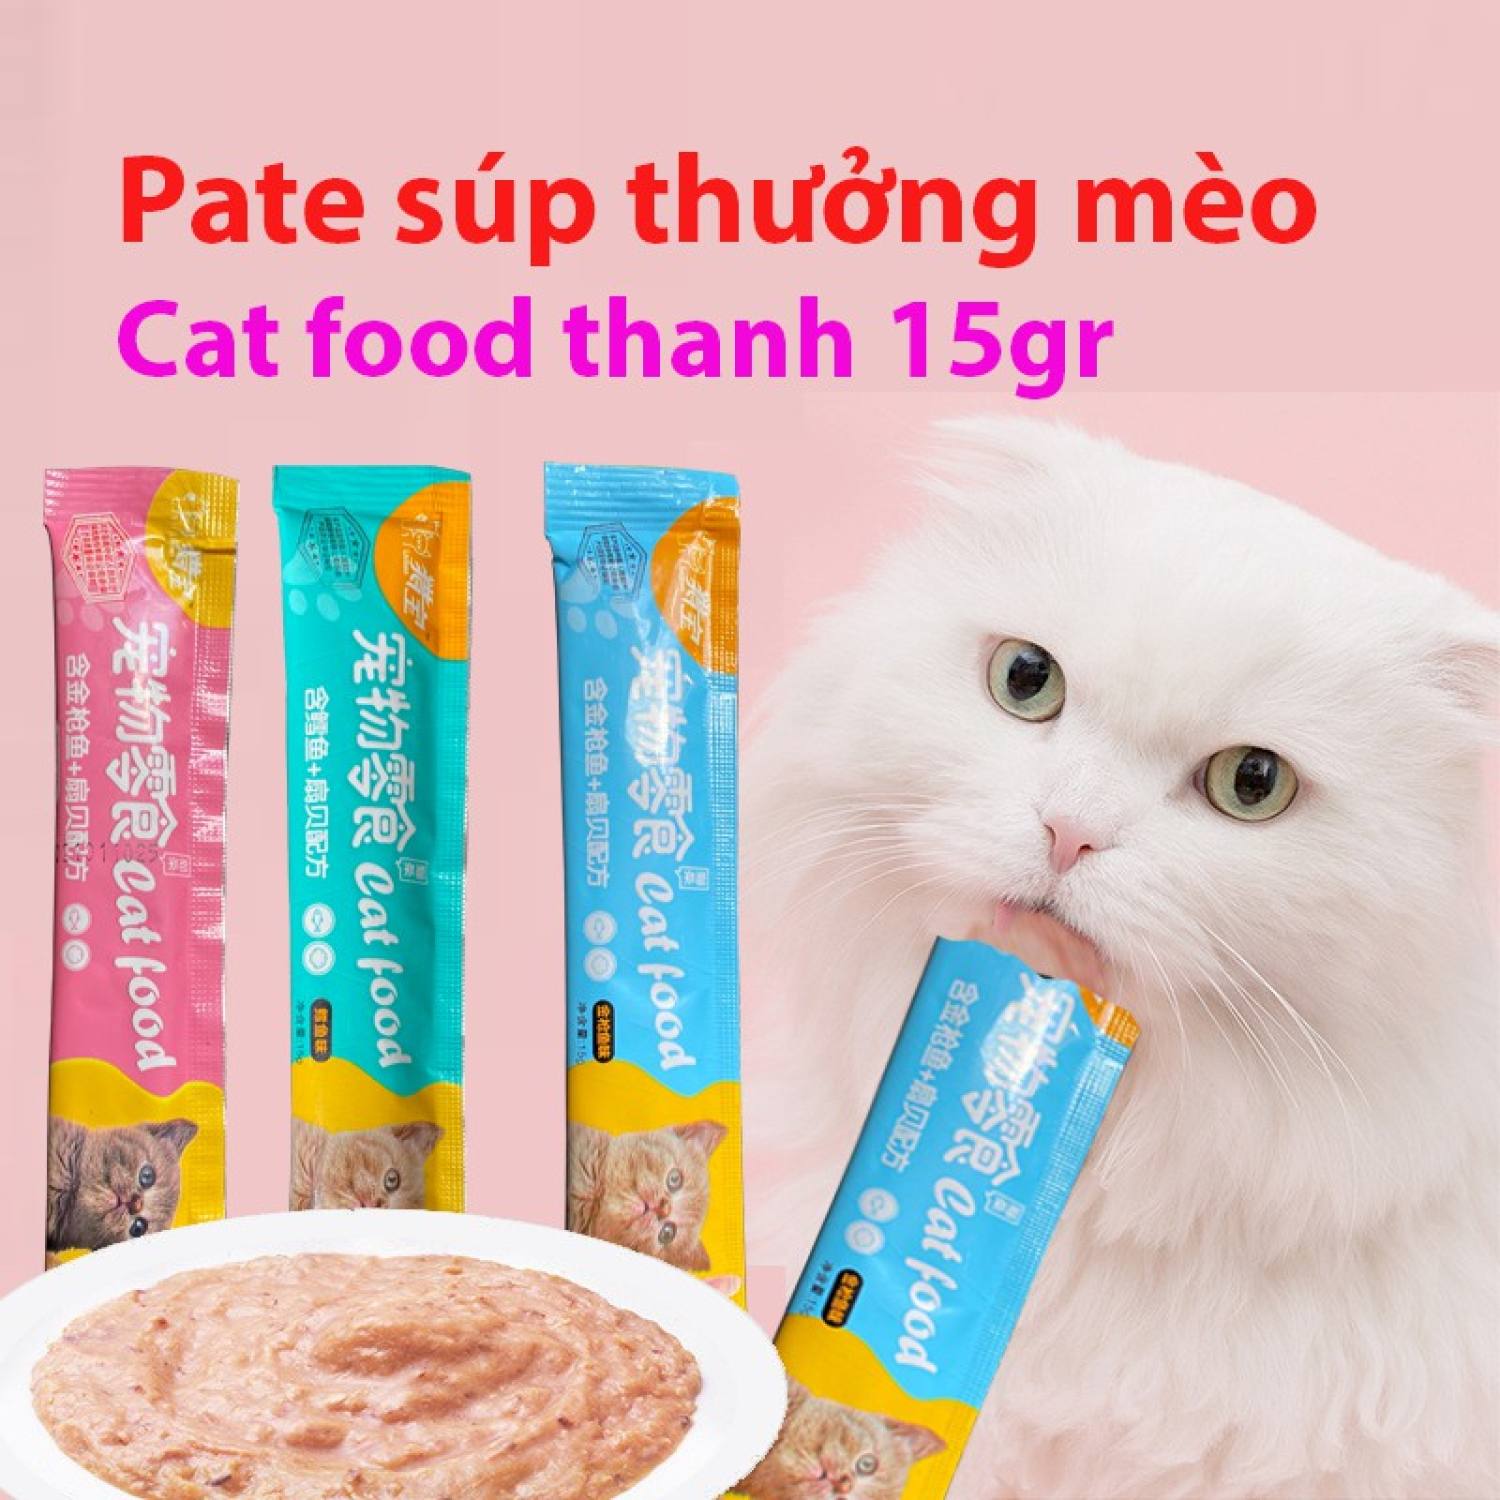 Orgo - Thanh Pate súp thưởng mèo